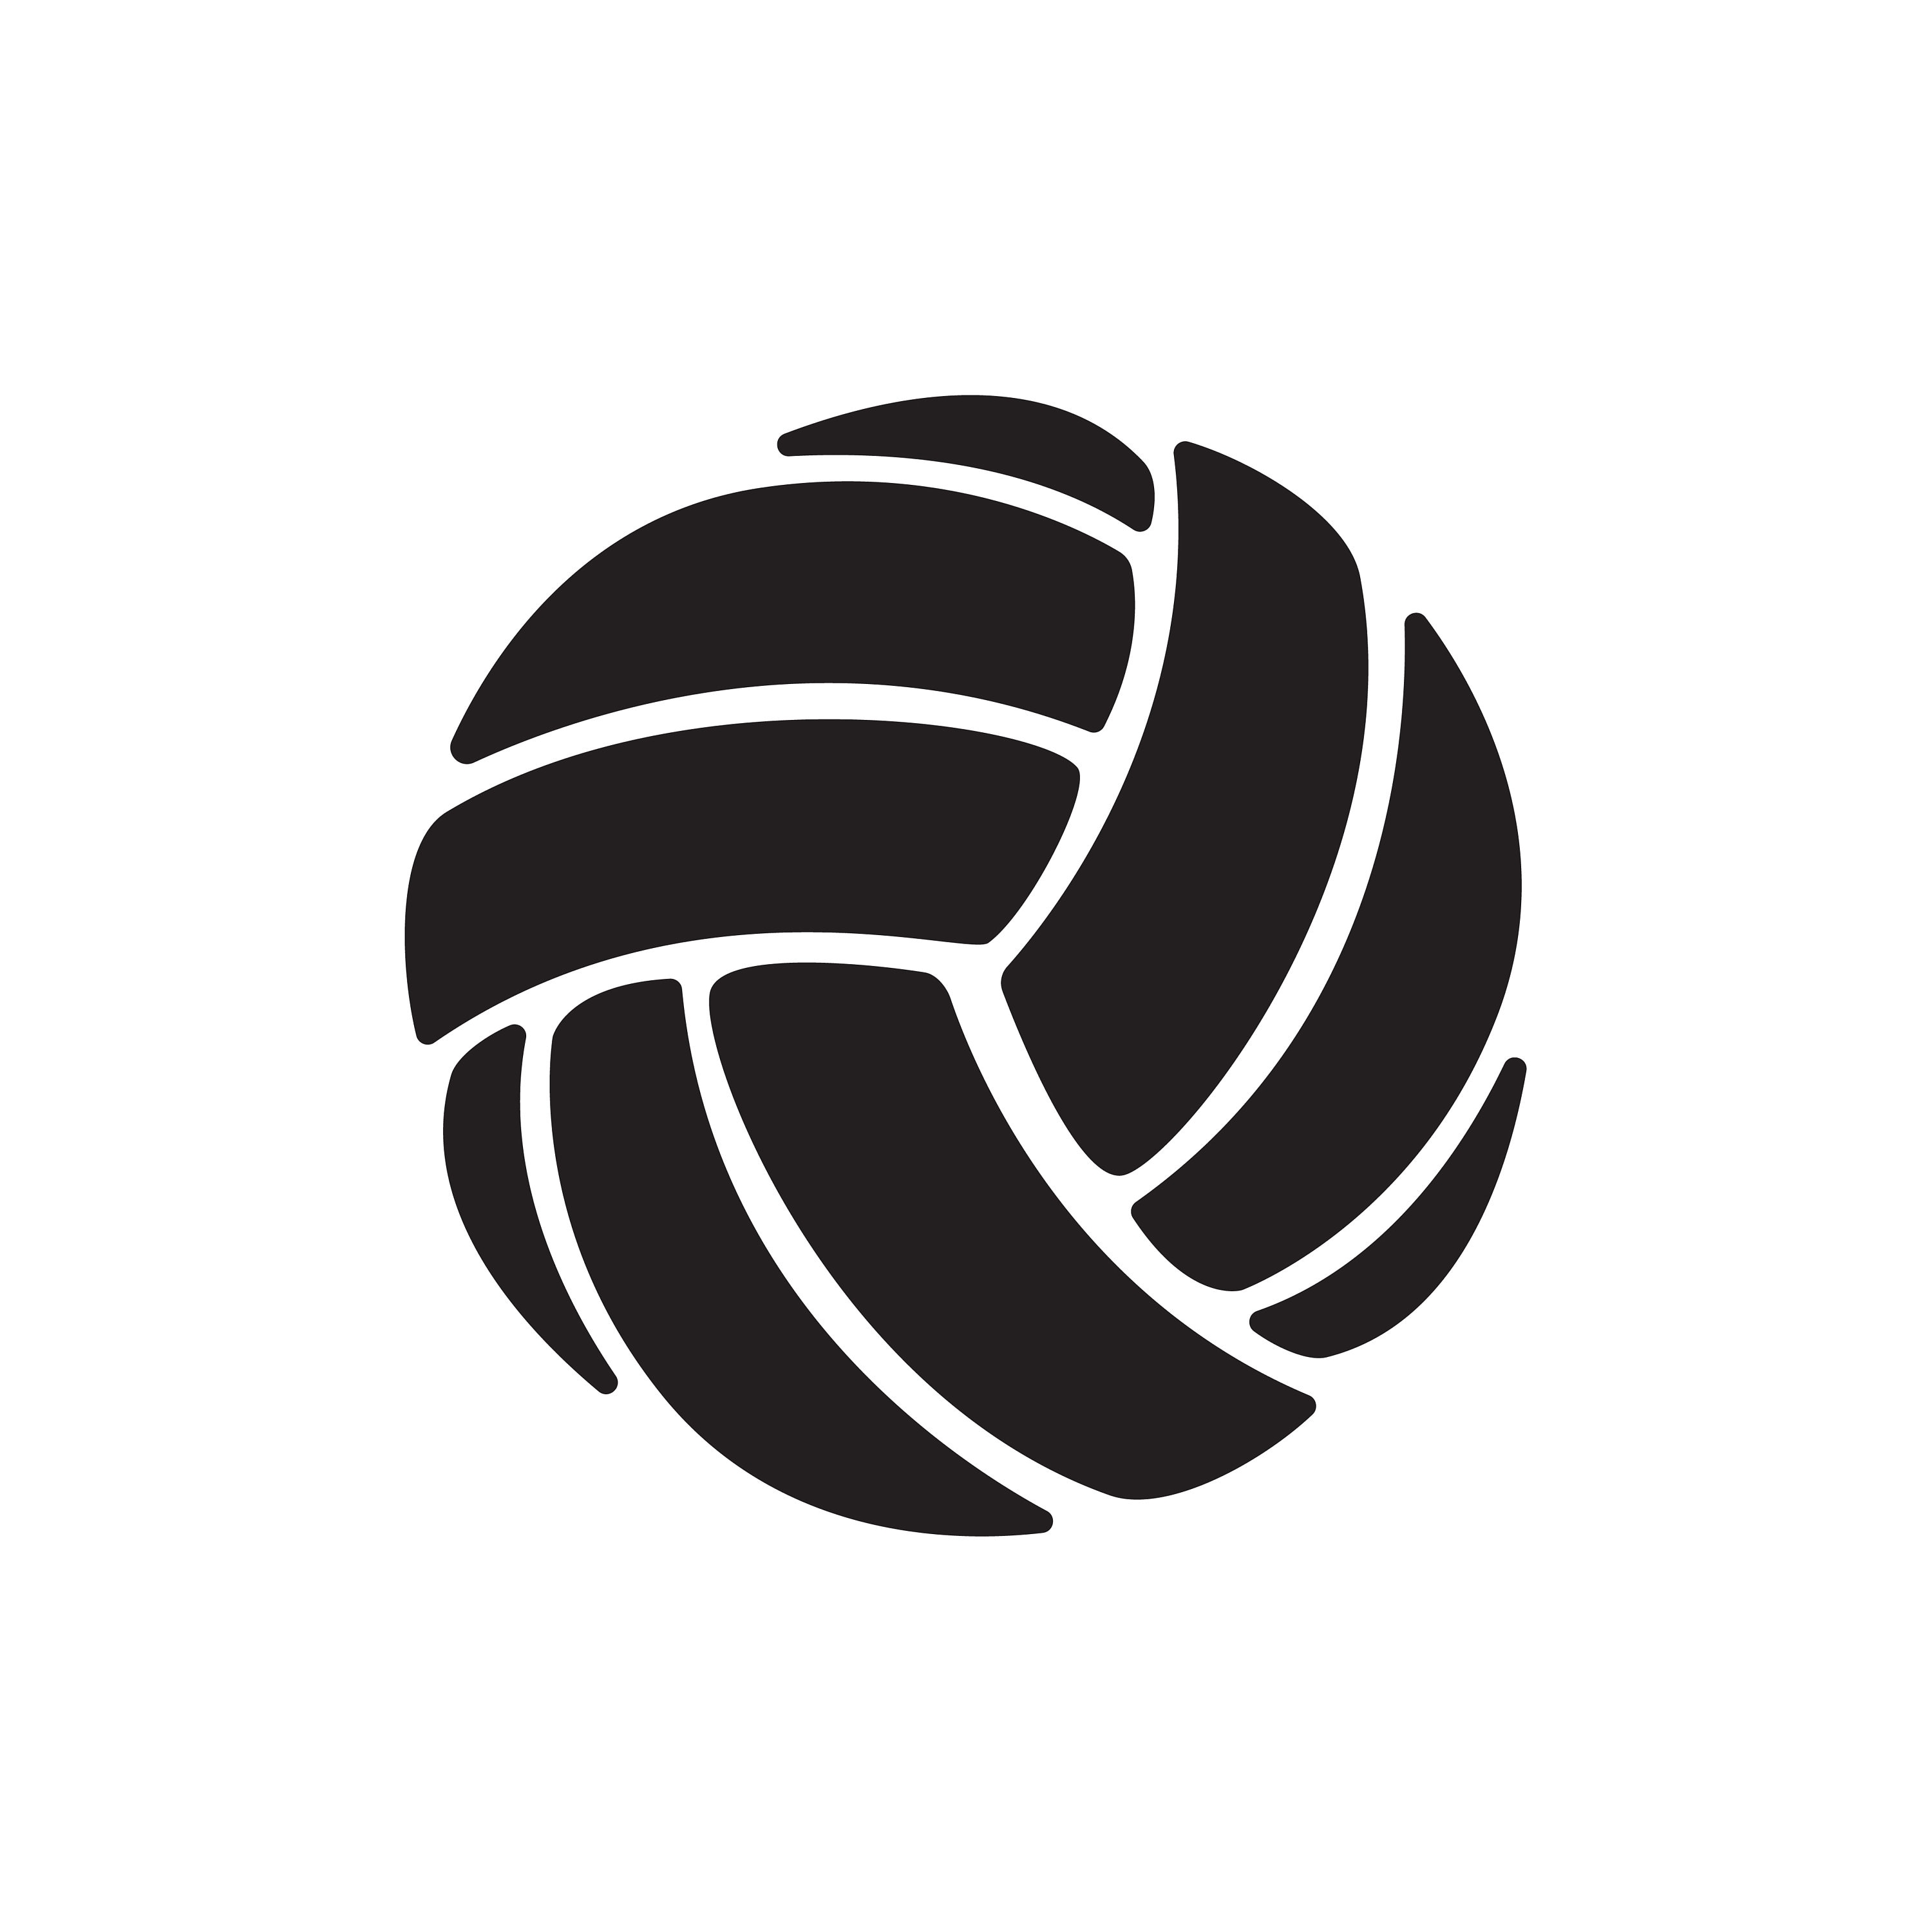 Icono plano patrón con pelota de voleibol #1 Stock Vector